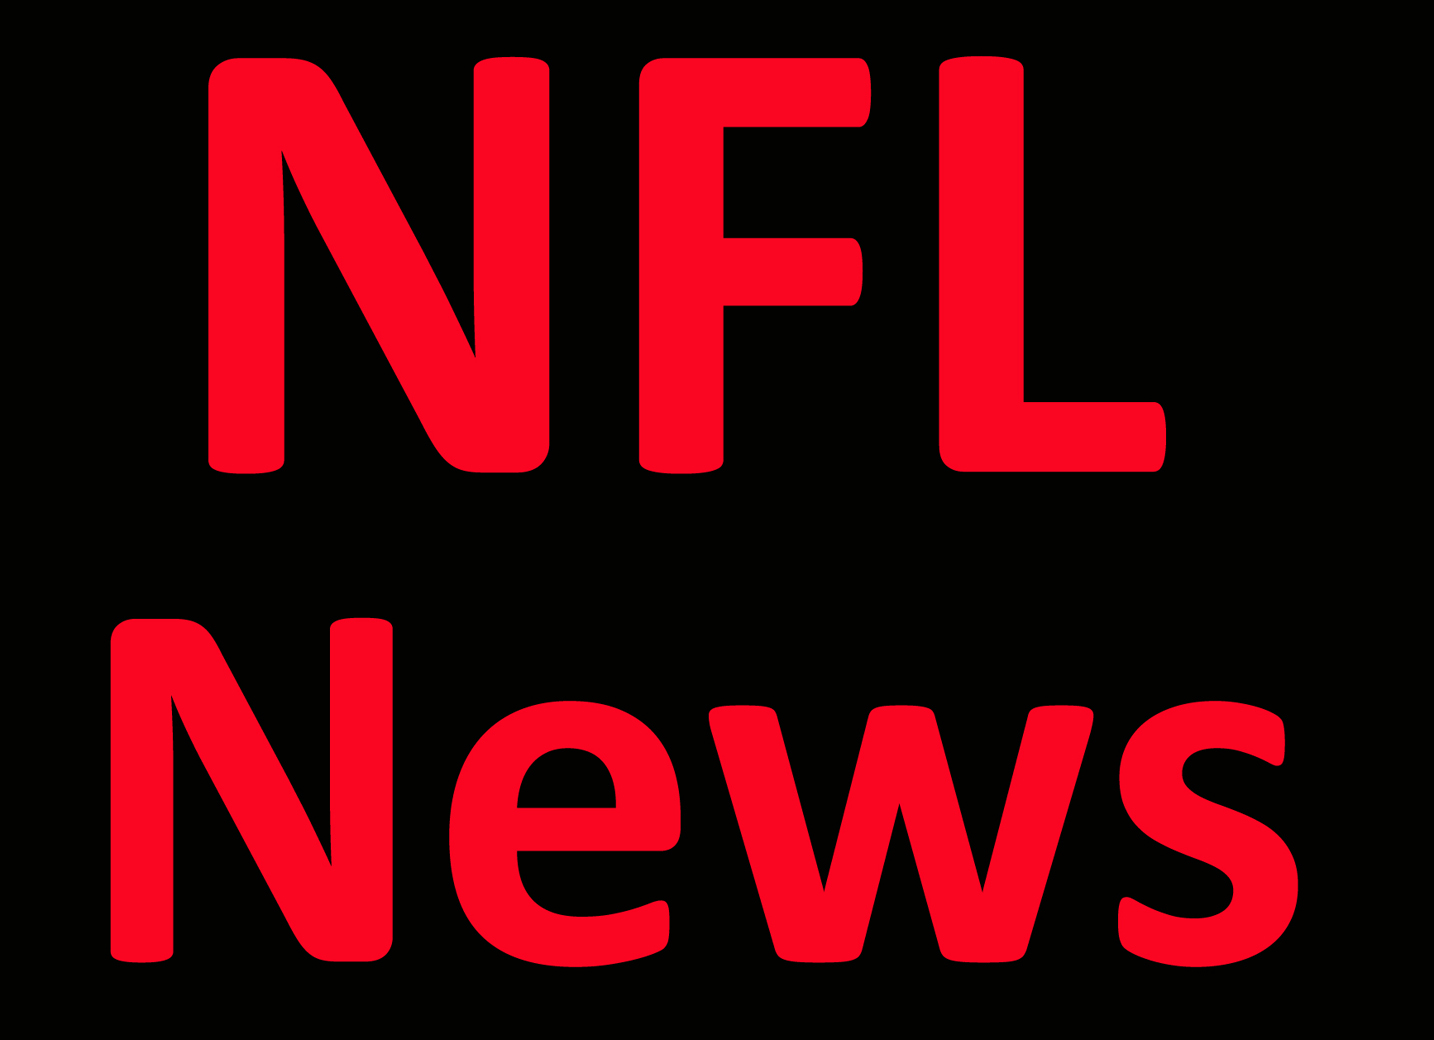 NFL News: Bills leave dorms as teams prep for full preseason slate Per Report